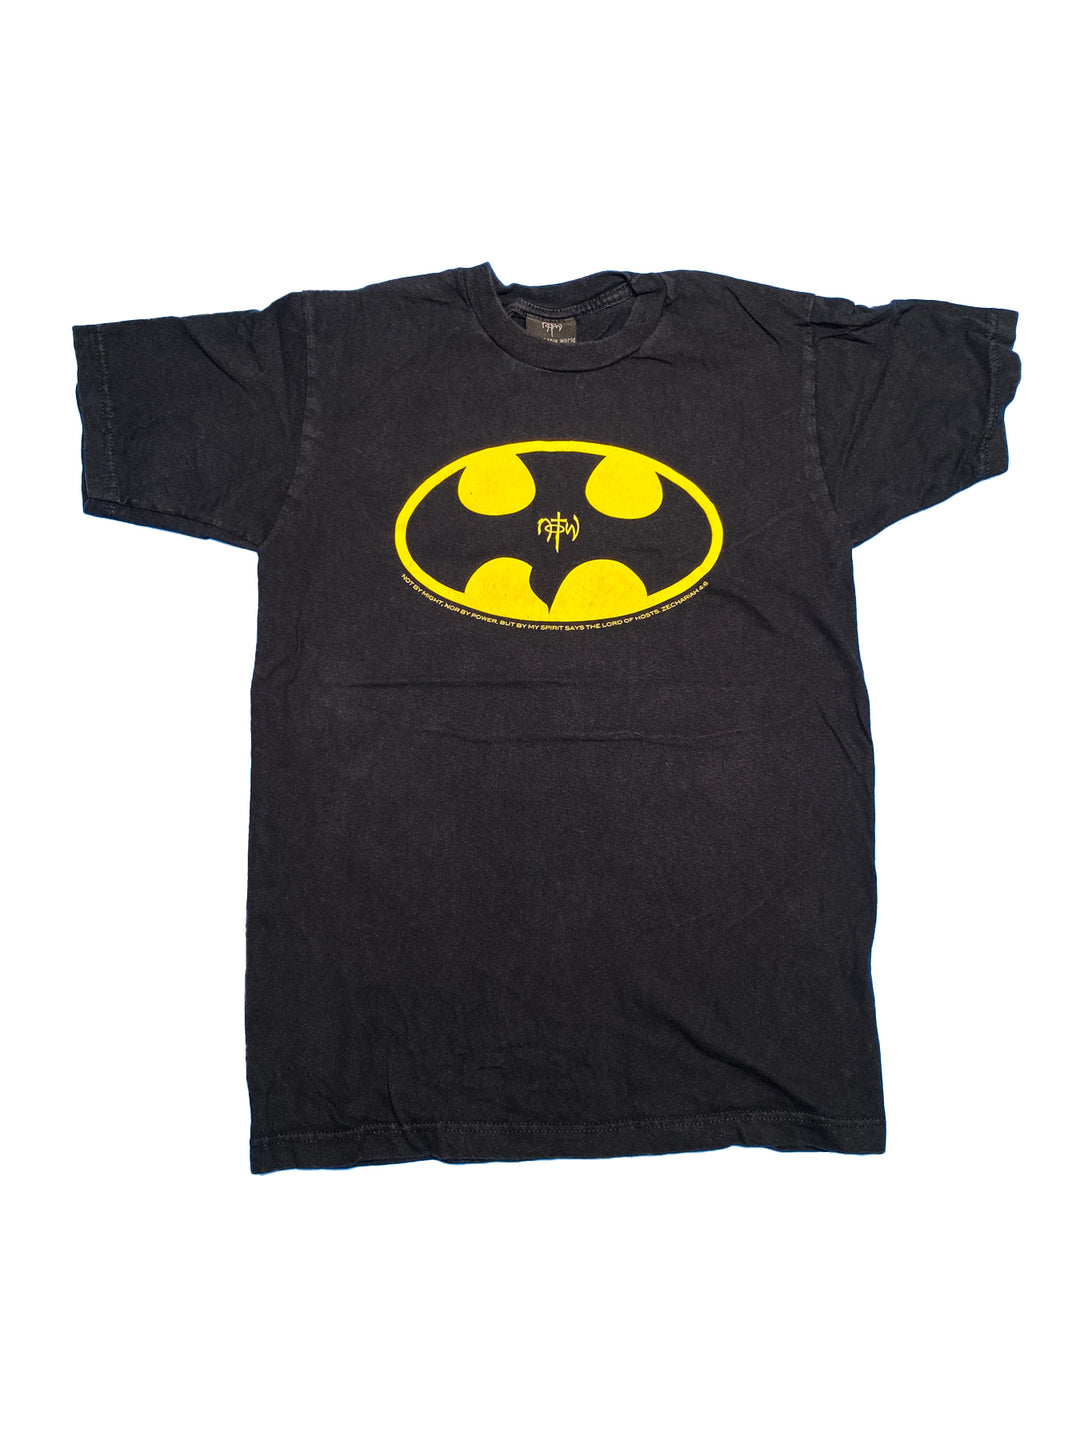 NOTW- Bat man parody